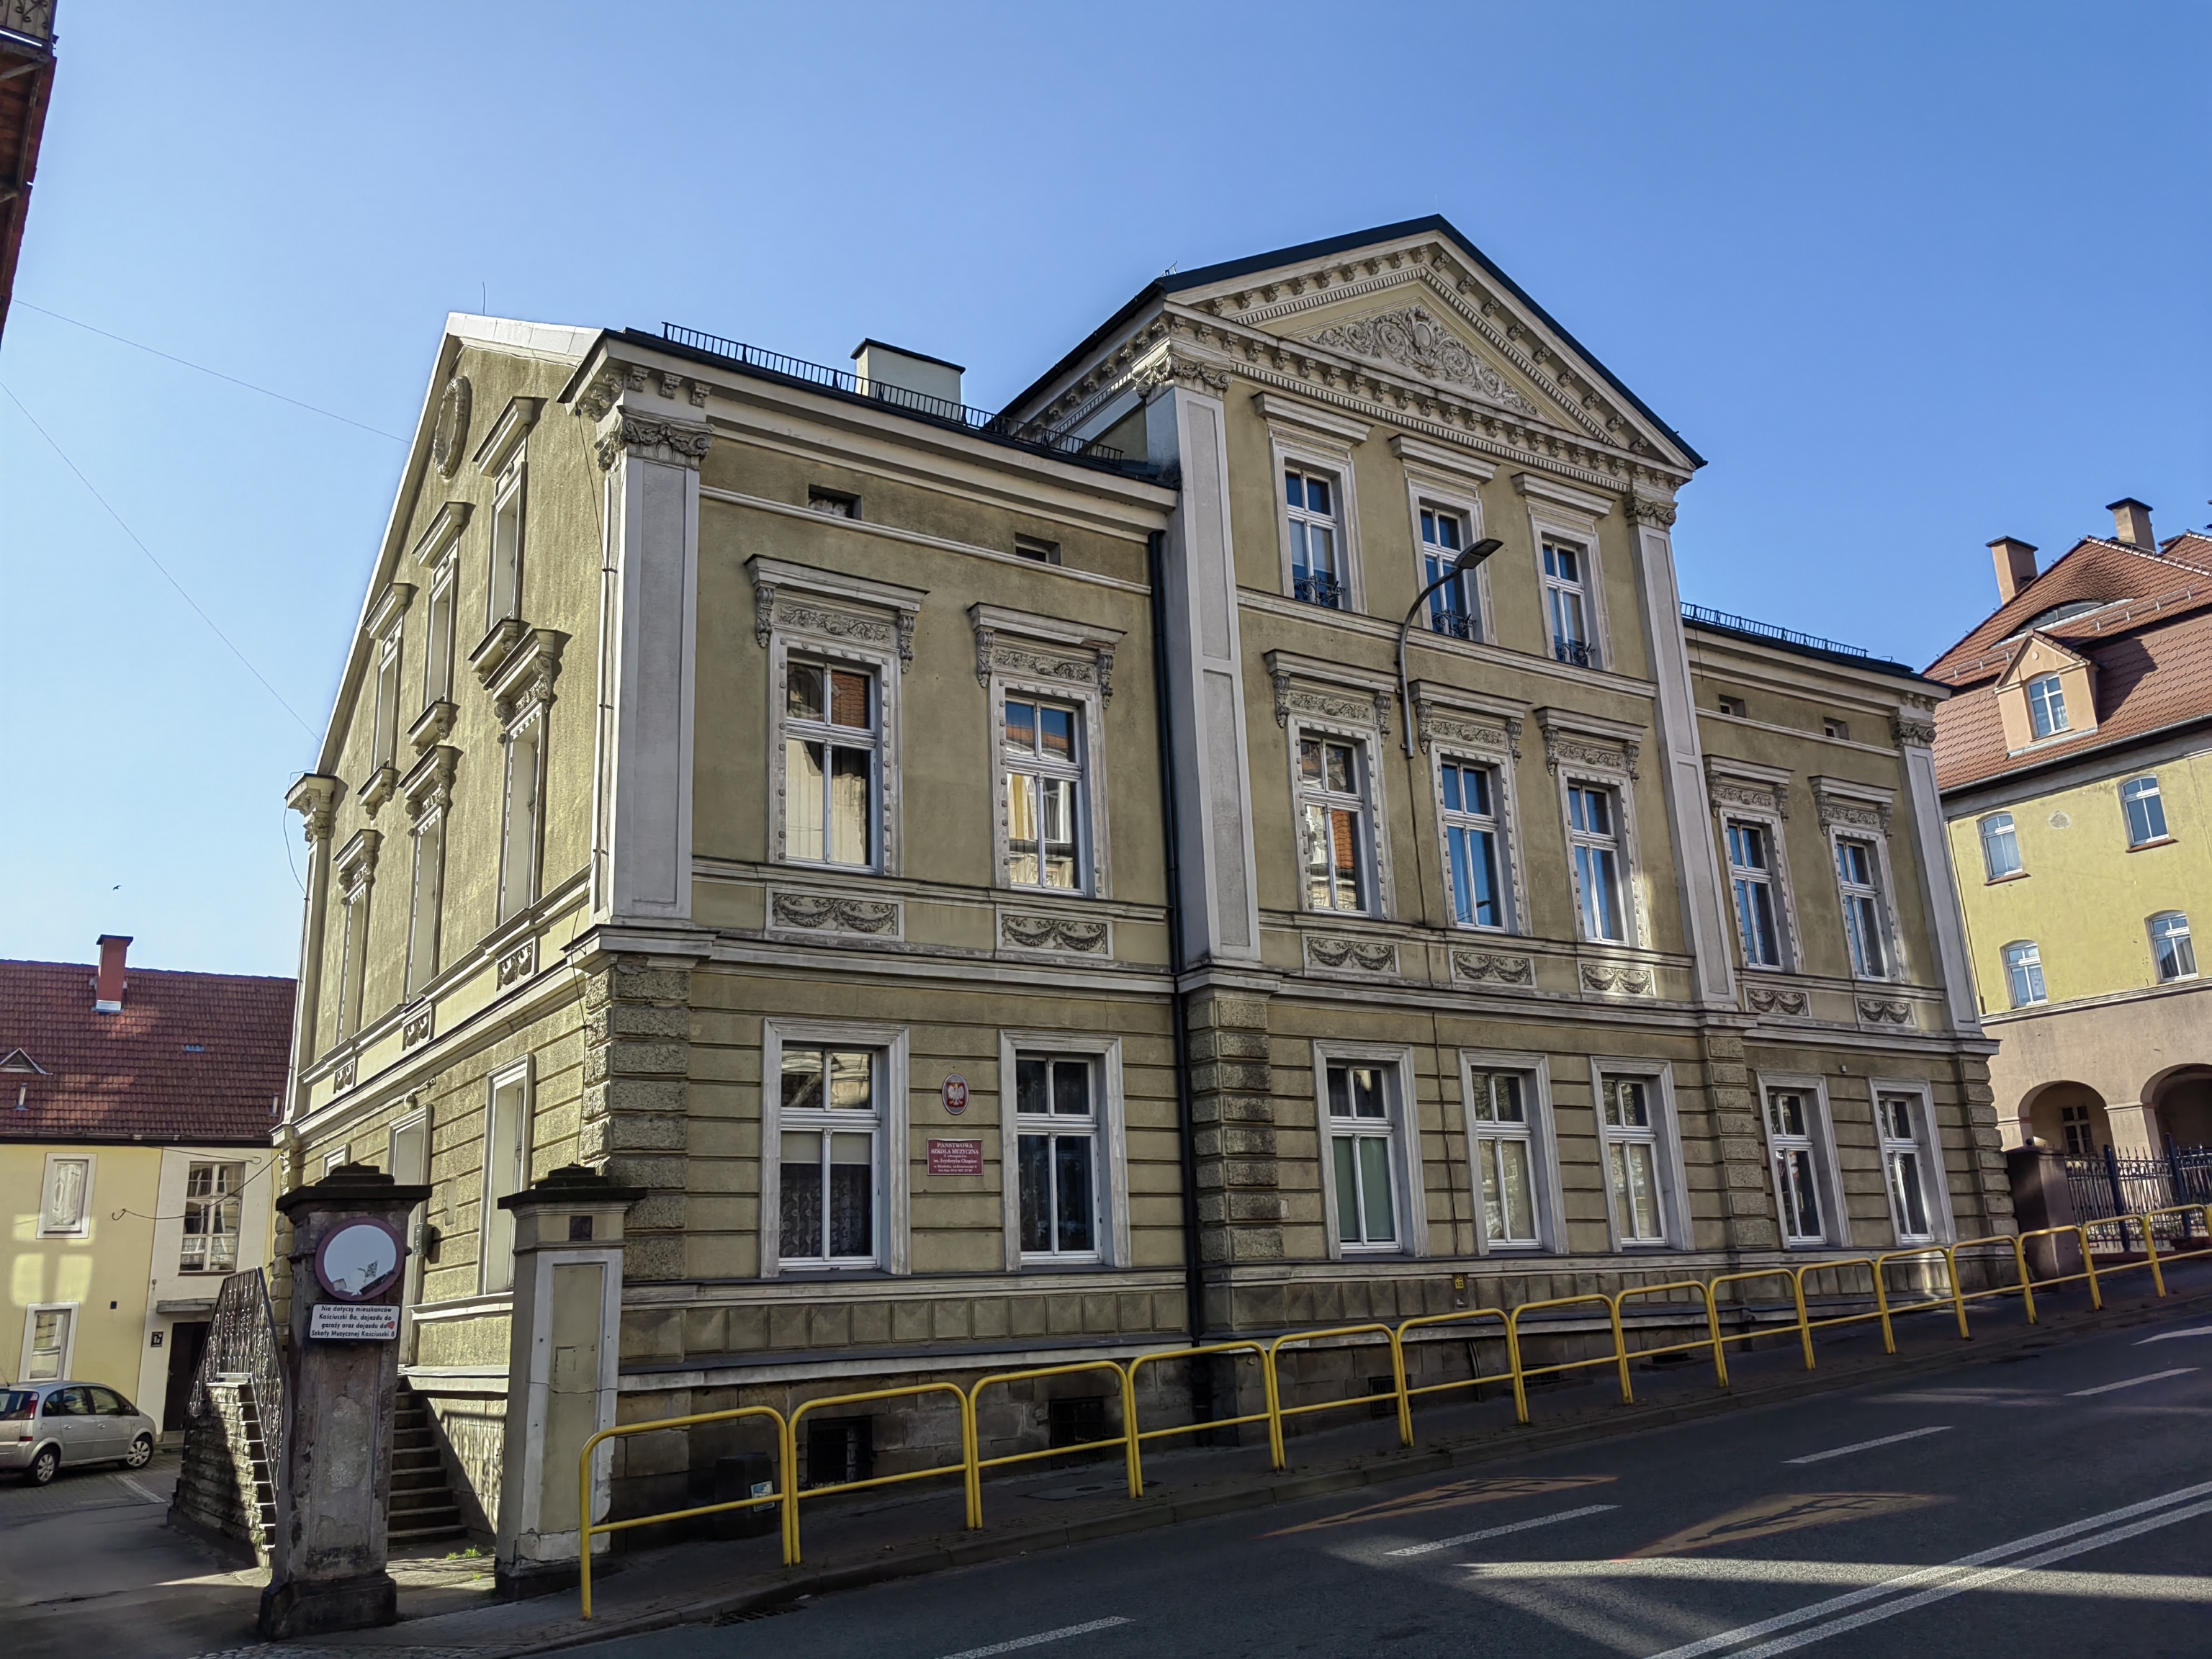 Zdjęcie wykonane w słoneczny dzień od strony ulicy, przedstawia budynek PSM I st. im. Fryderyka Chopina w Kłodzku, widoczny jest przód budynku wraz z wjazdem, oraz część ulicy, przy której znajduje się szkoła.